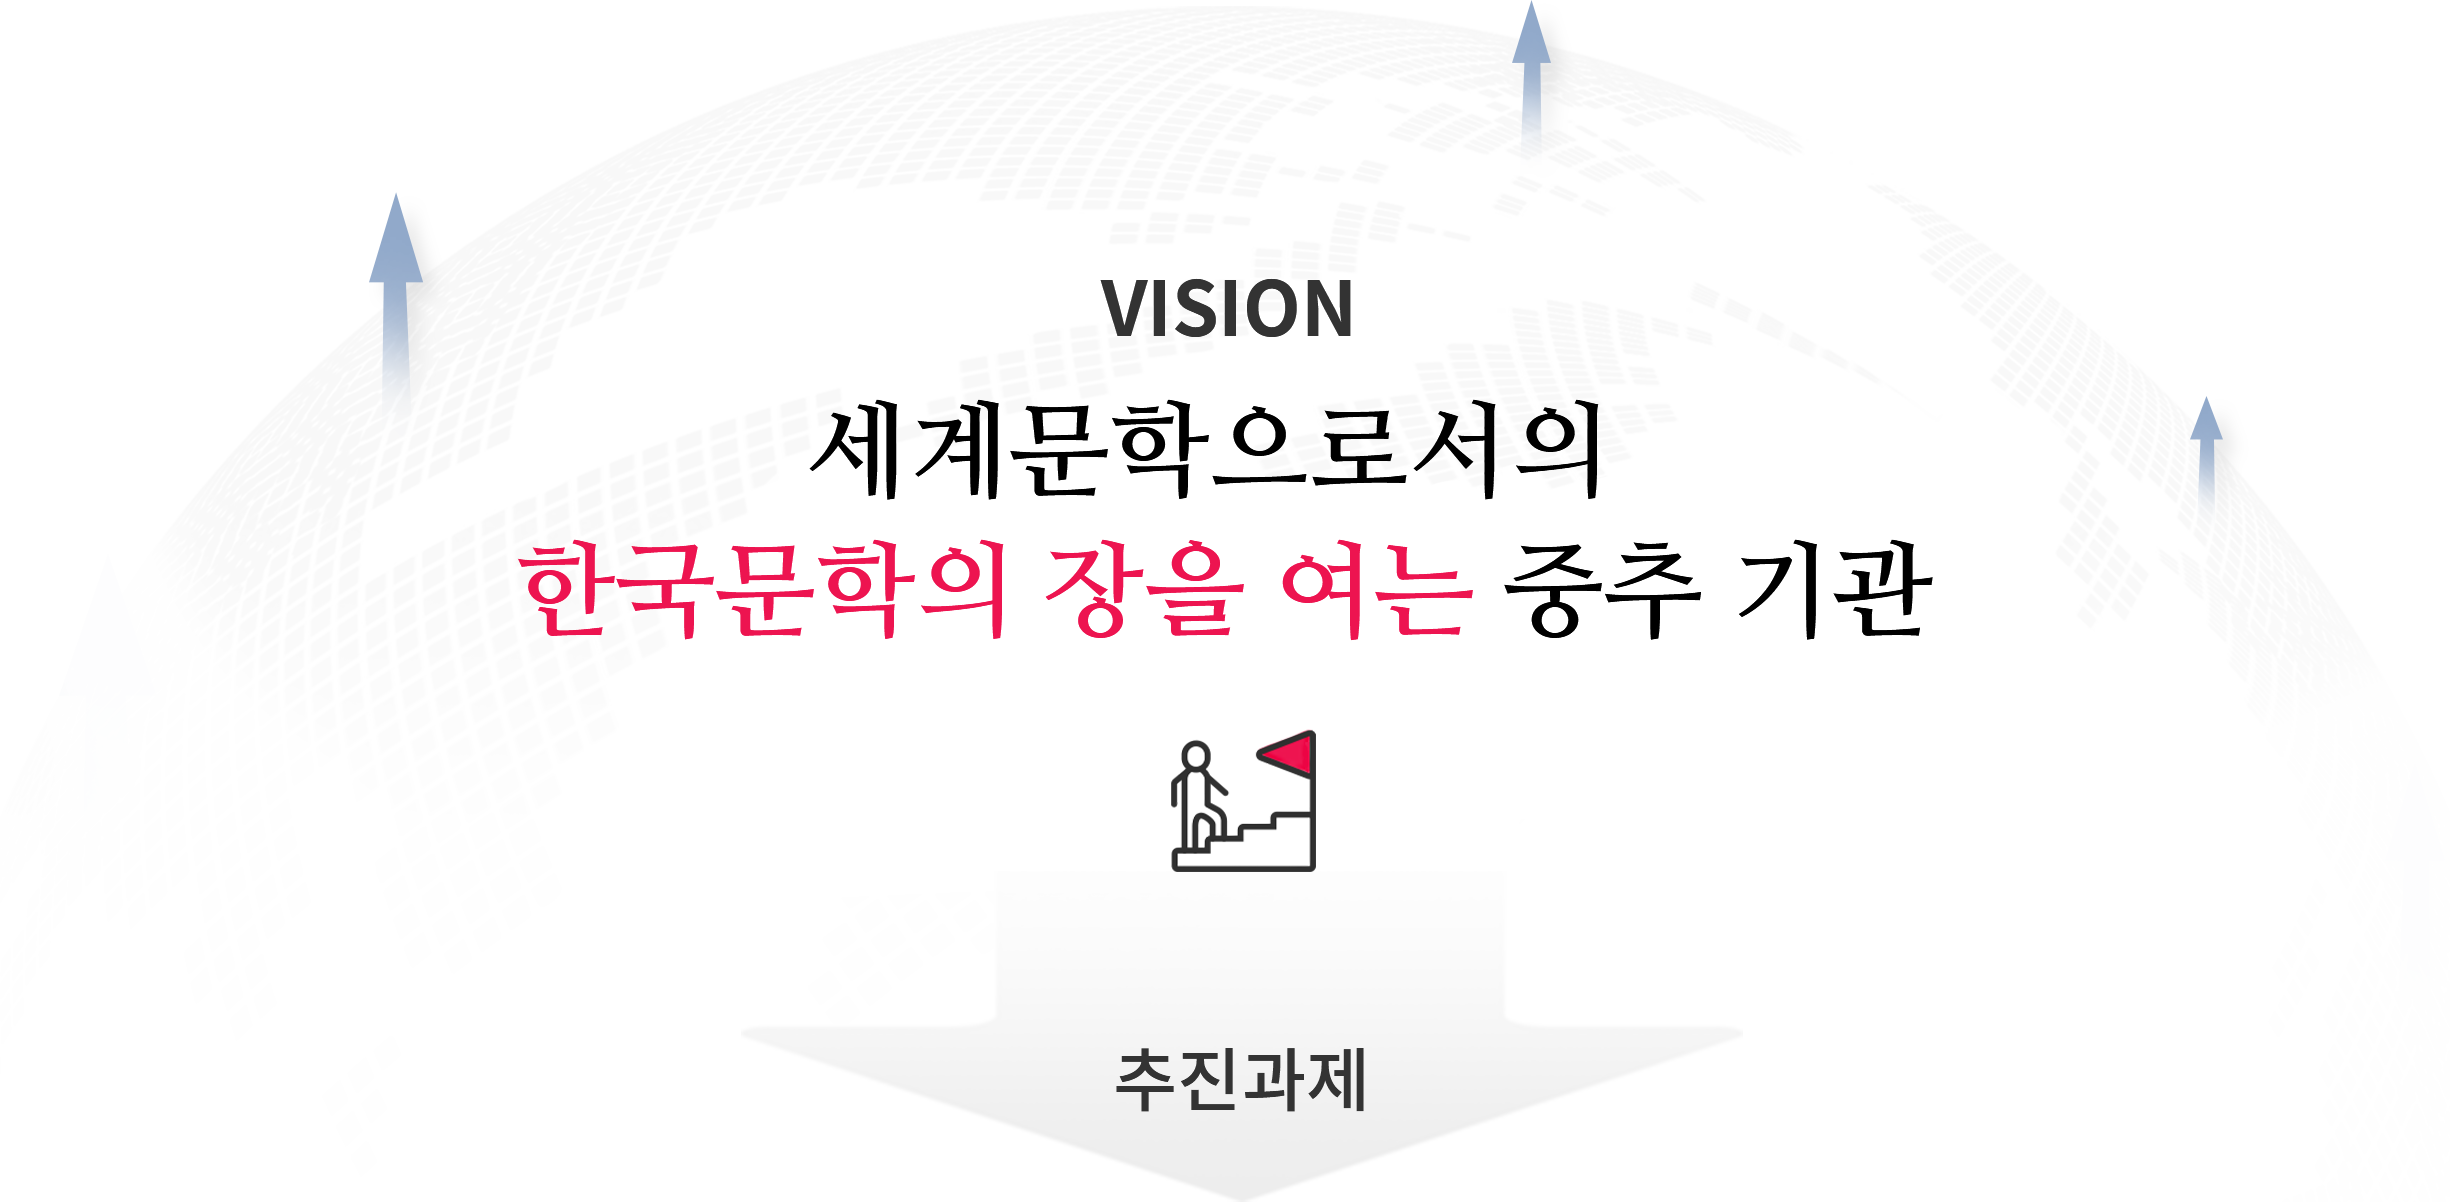 ViSION - 세계문학으로서의 한국문학의 장을 여는 중추 기관 > 추진과제